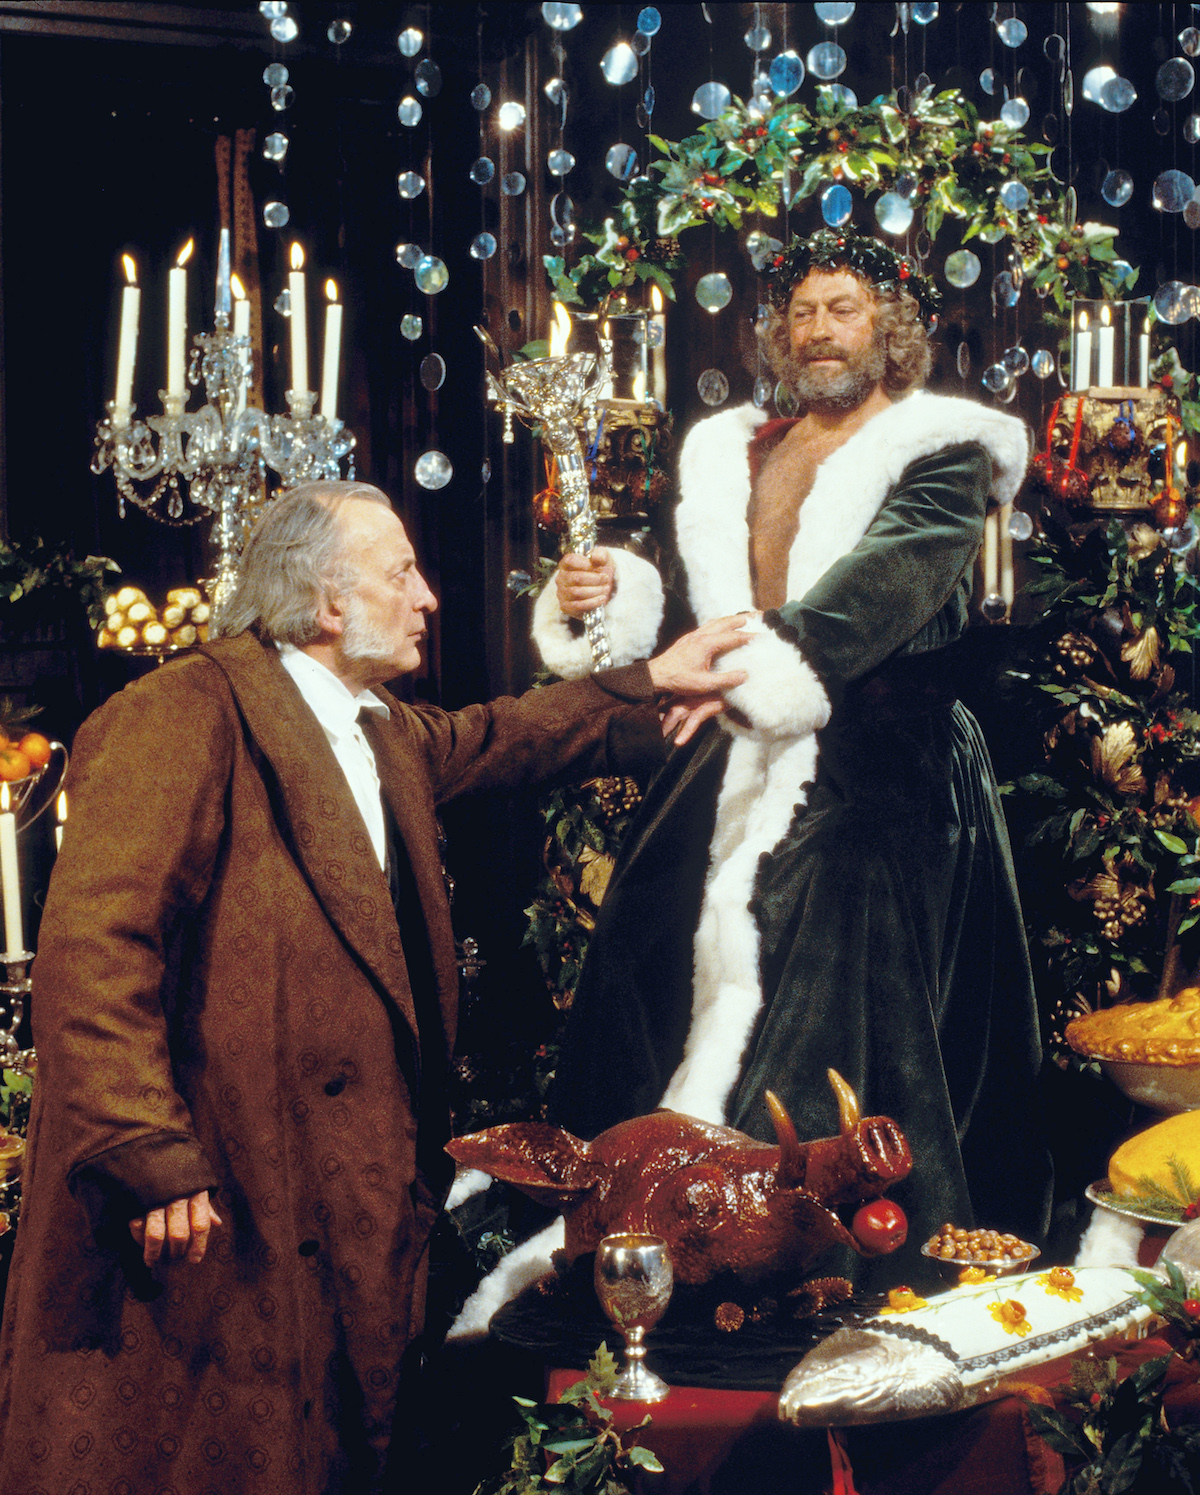 George C Scott in A Christmas Carol